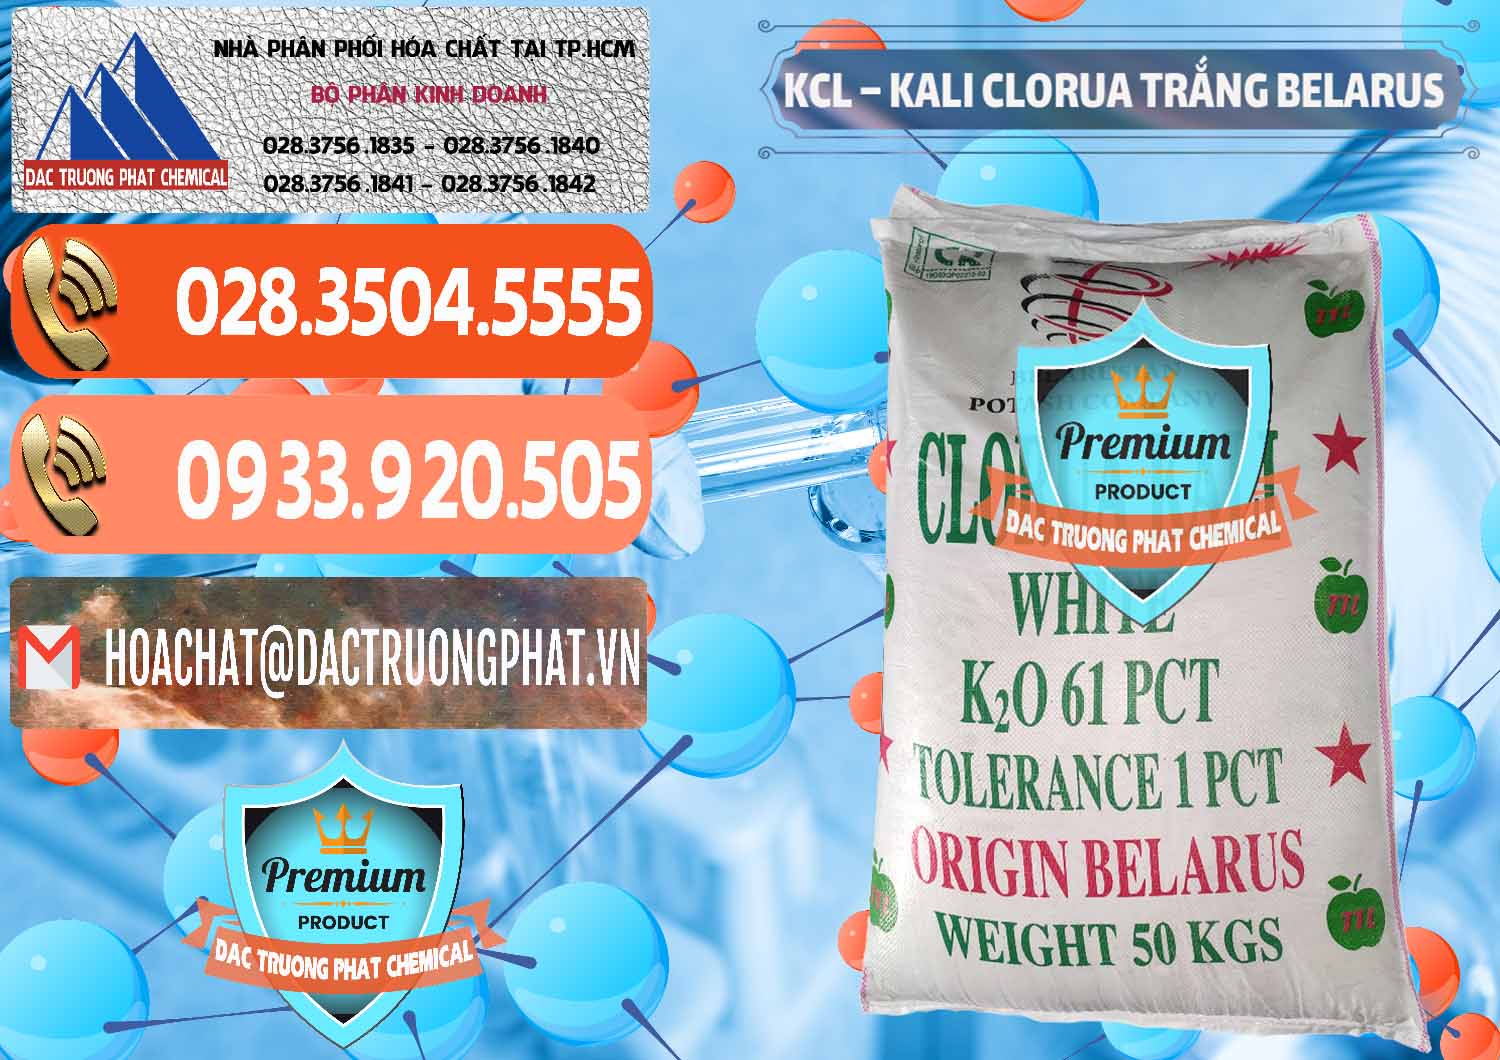 Đơn vị chuyên bán và cung cấp KCL – Kali Clorua Trắng Belarus - 0085 - Cty cung cấp - phân phối hóa chất tại TP.HCM - hoachatmientay.com